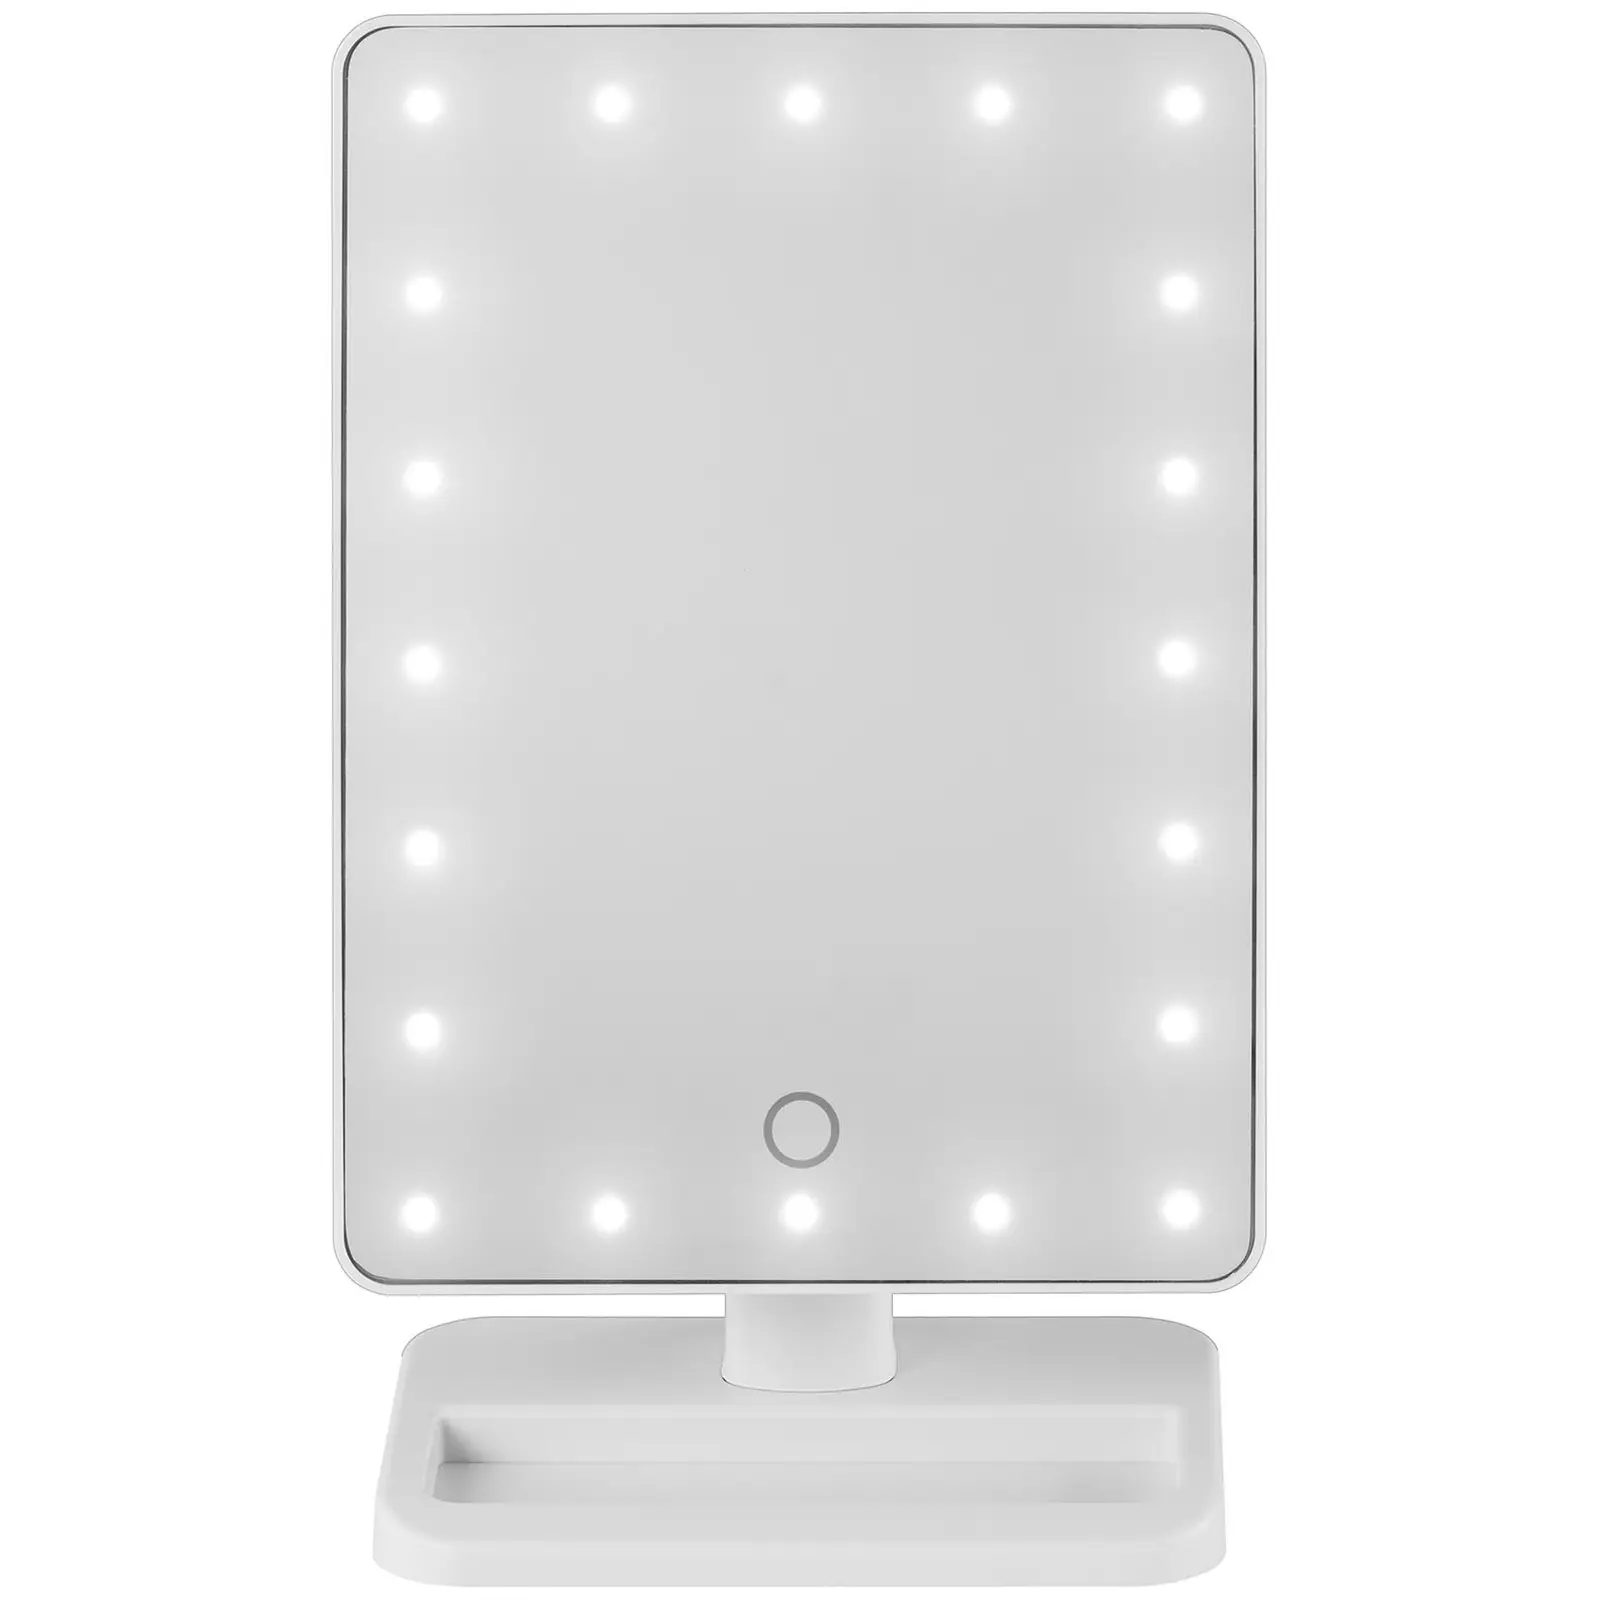 Sminkspegel med belysning - Vit - 10x förstoring - 20 LED-lampor - Fyrkantig - Högtalare